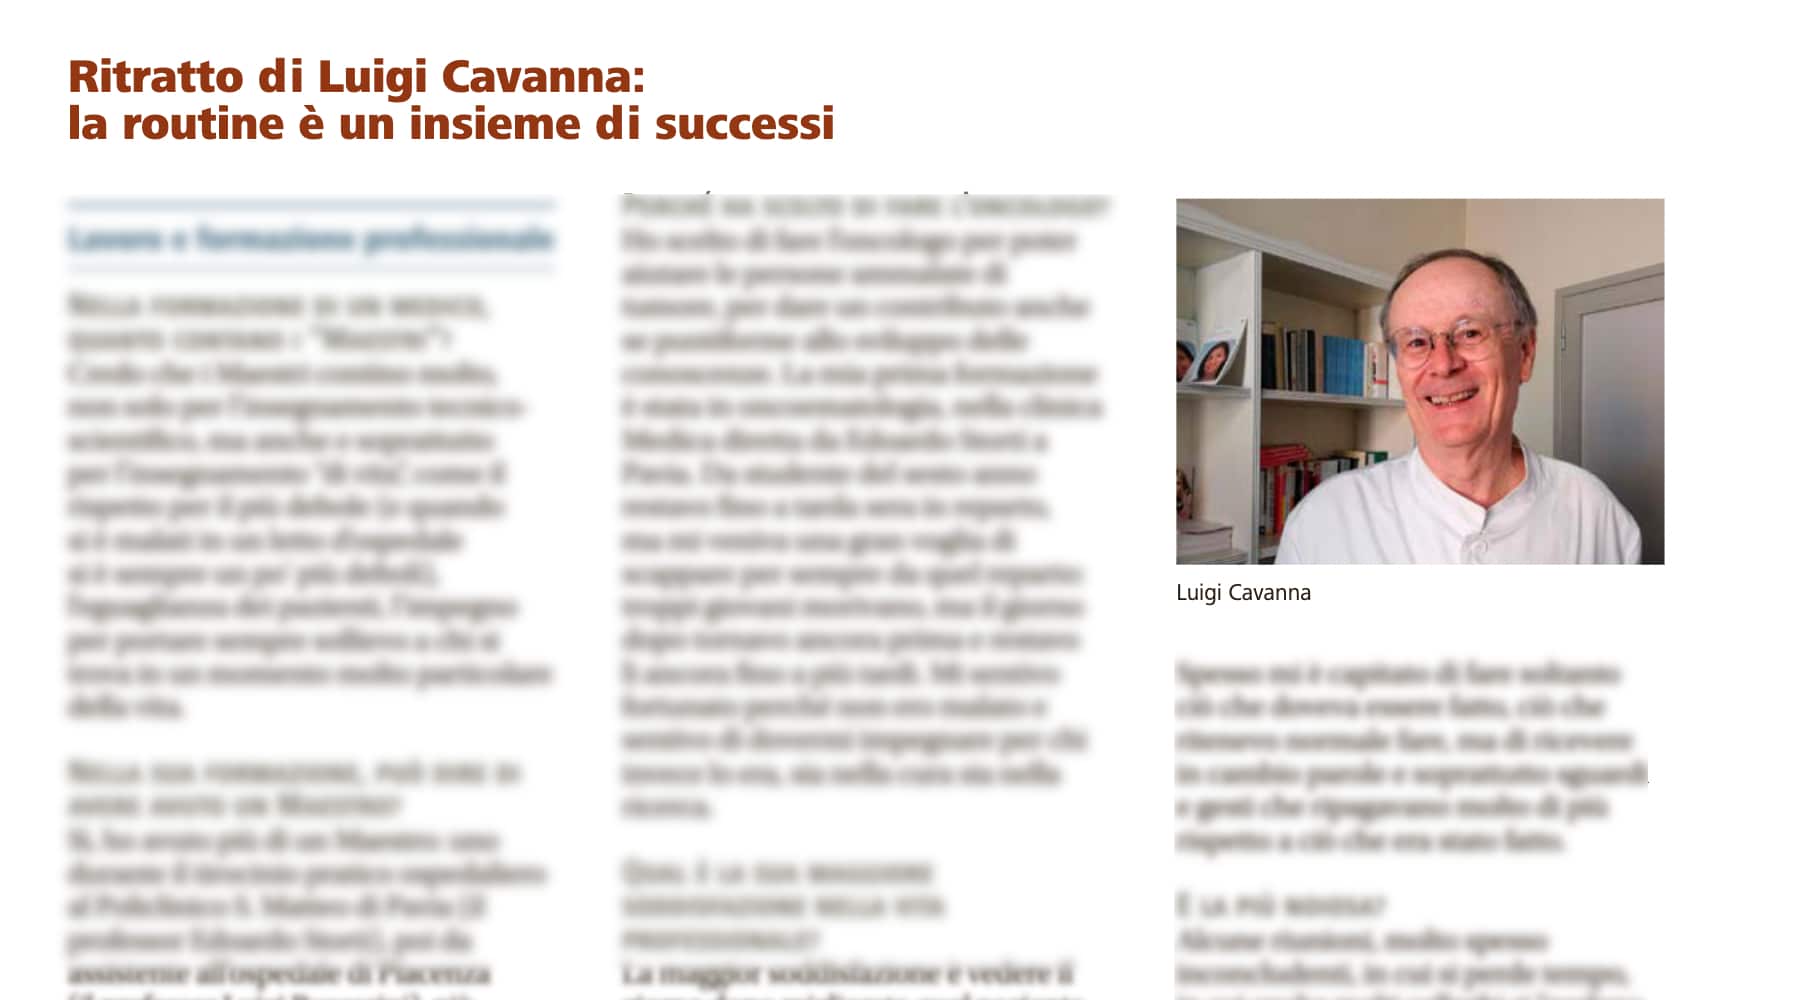 Clicca per accedere all'articolo Recenti Progressi in Medicina - "Ritratto di Luigi Cavanna: la routine è un insieme di successi"